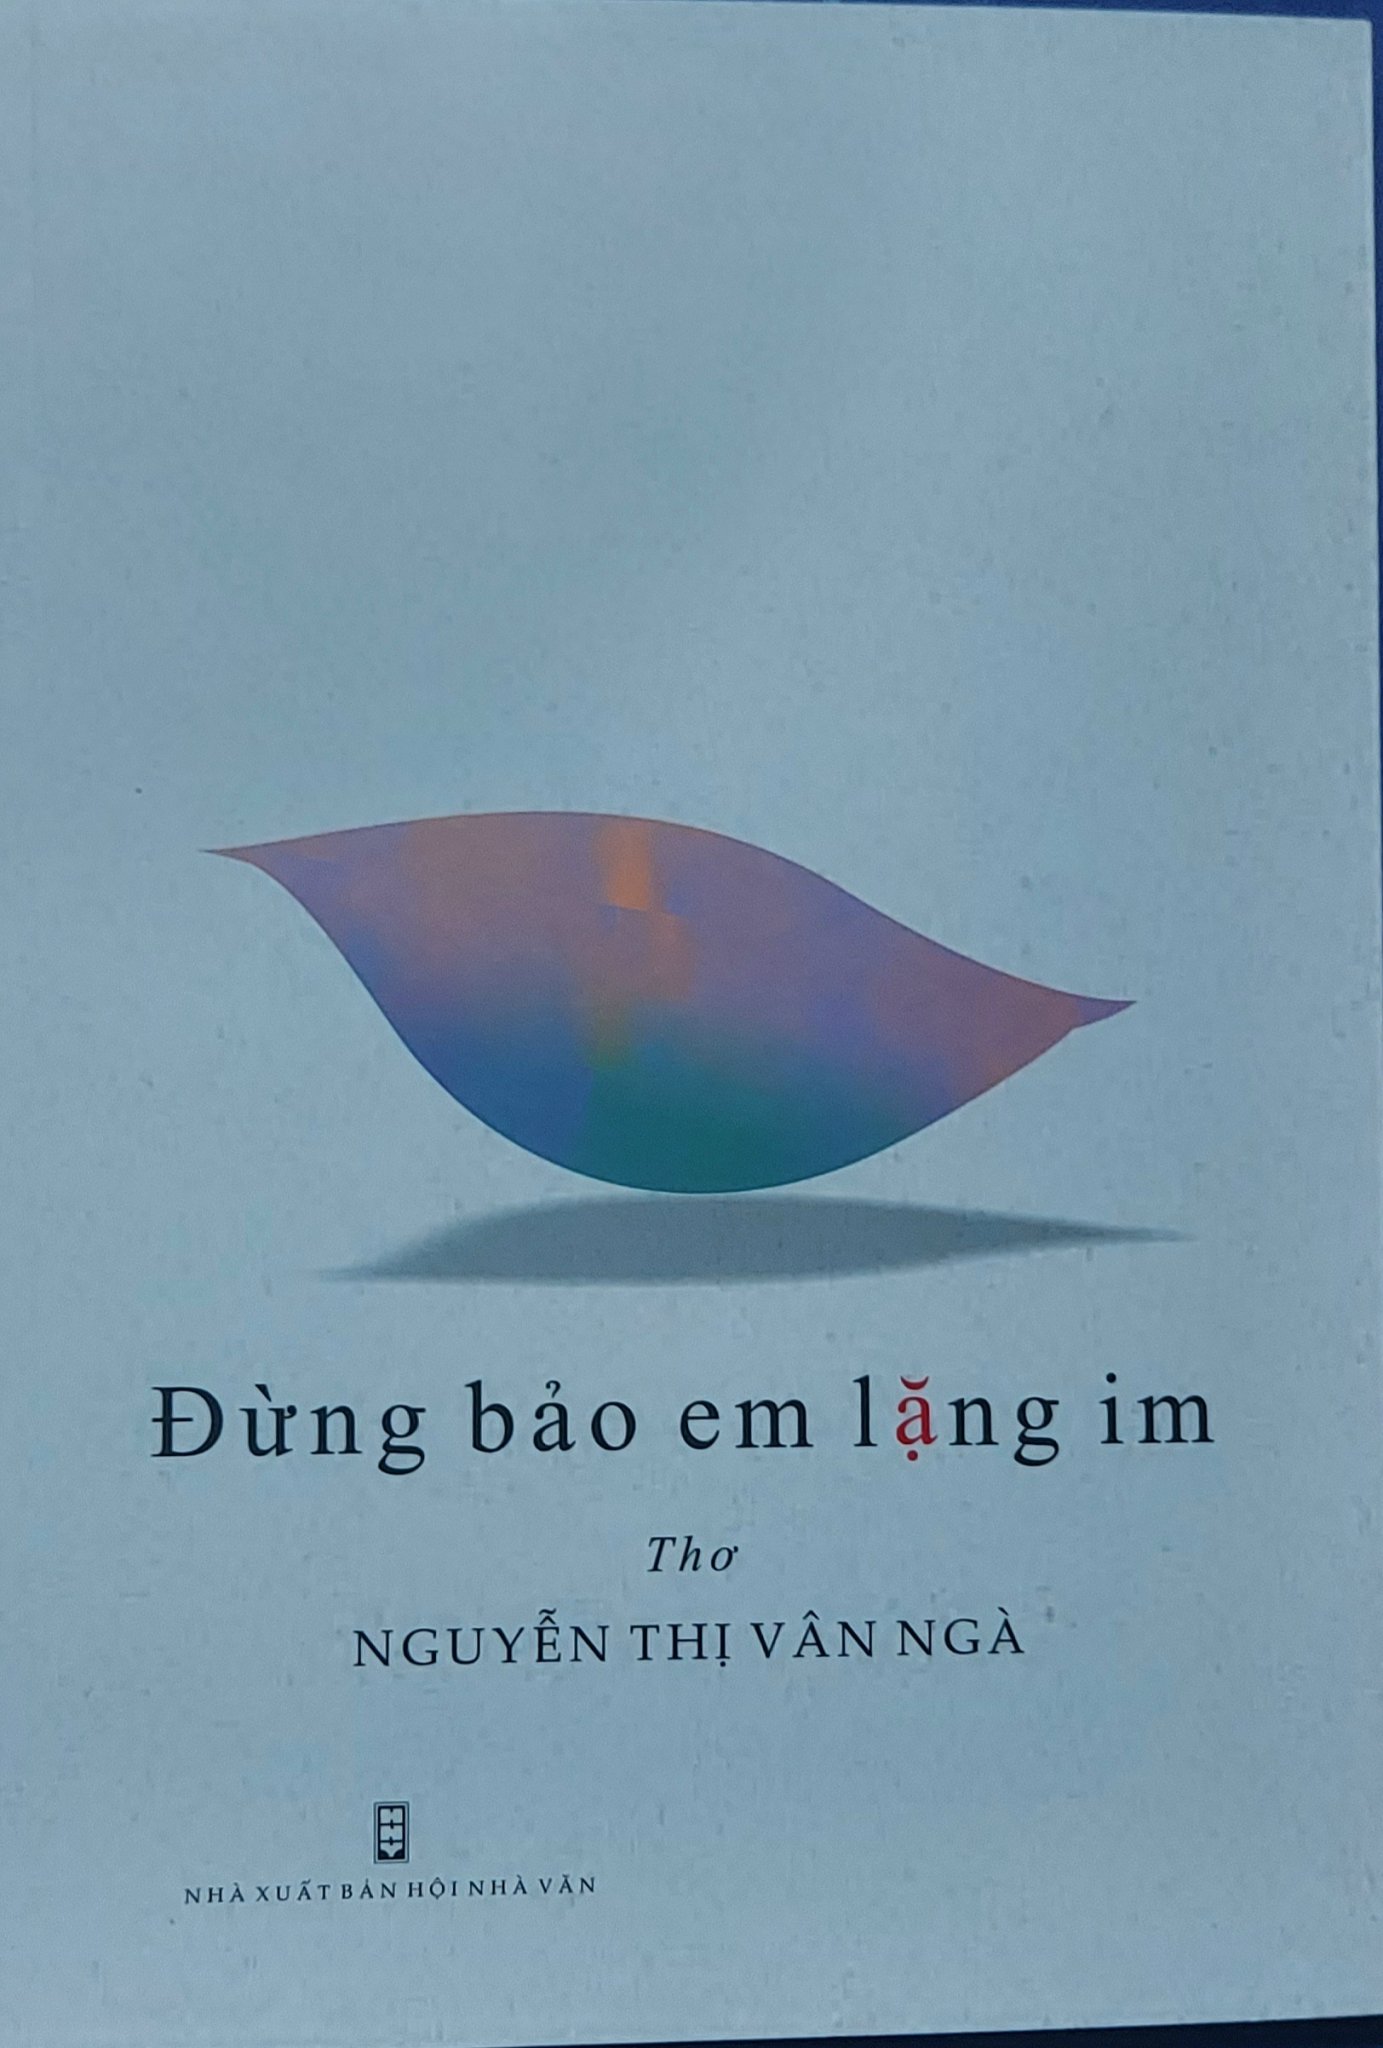 Van Nga voi tap tho Dung bao em lang im min - Tác giả Nguyễn Thị Vân Ngà